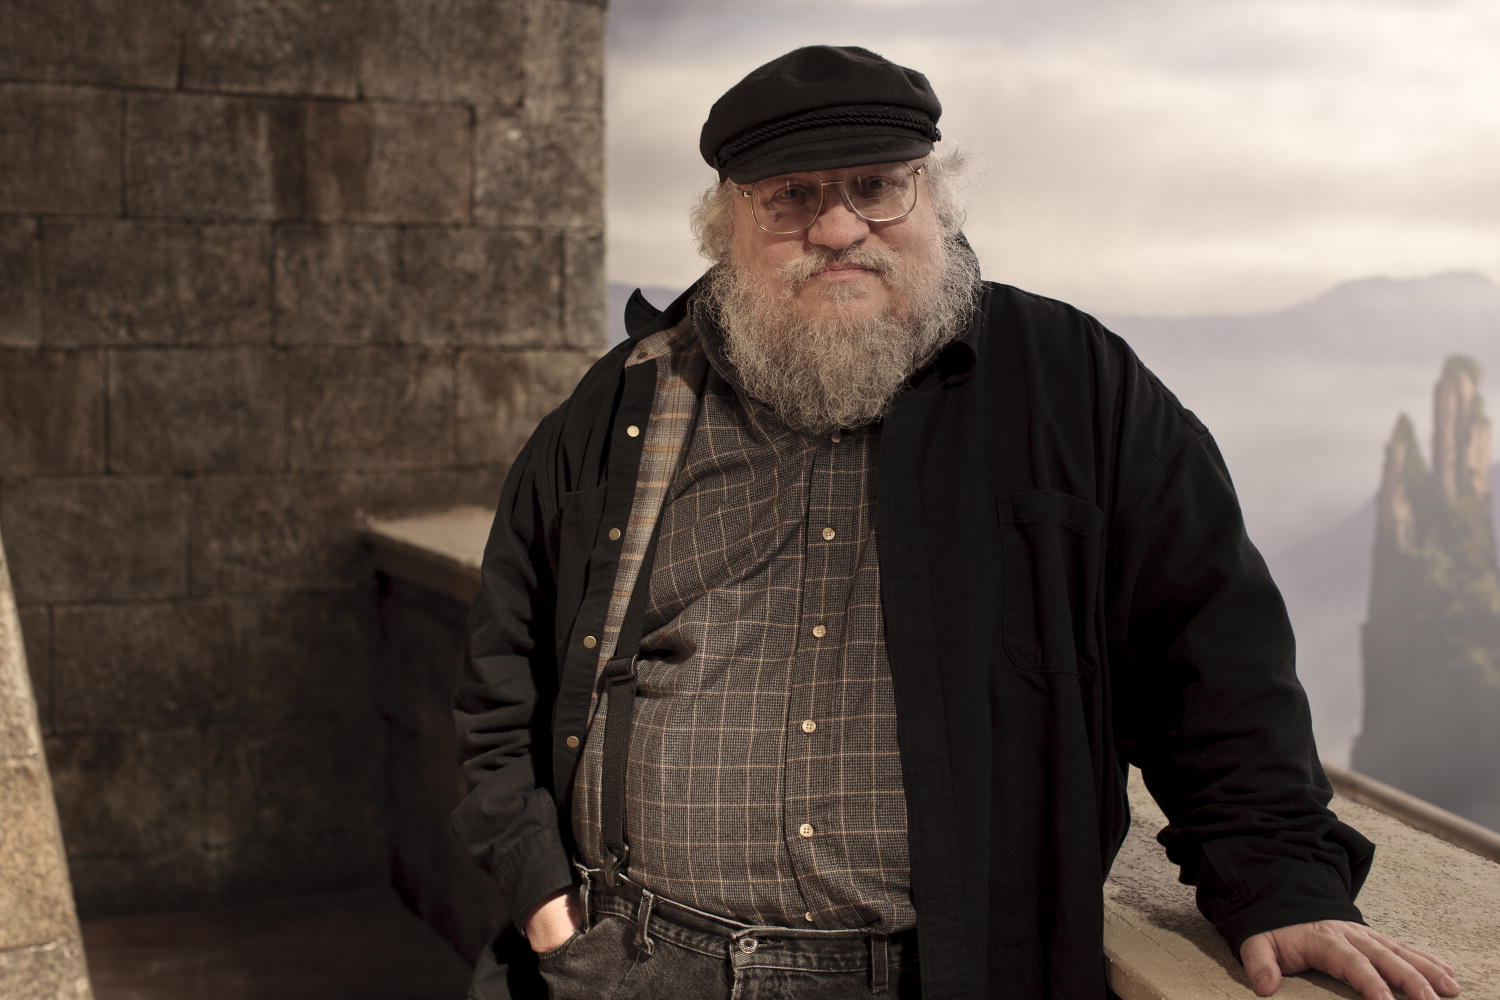 Escritor de ‘Game of Thrones’ terá outra série na televisão